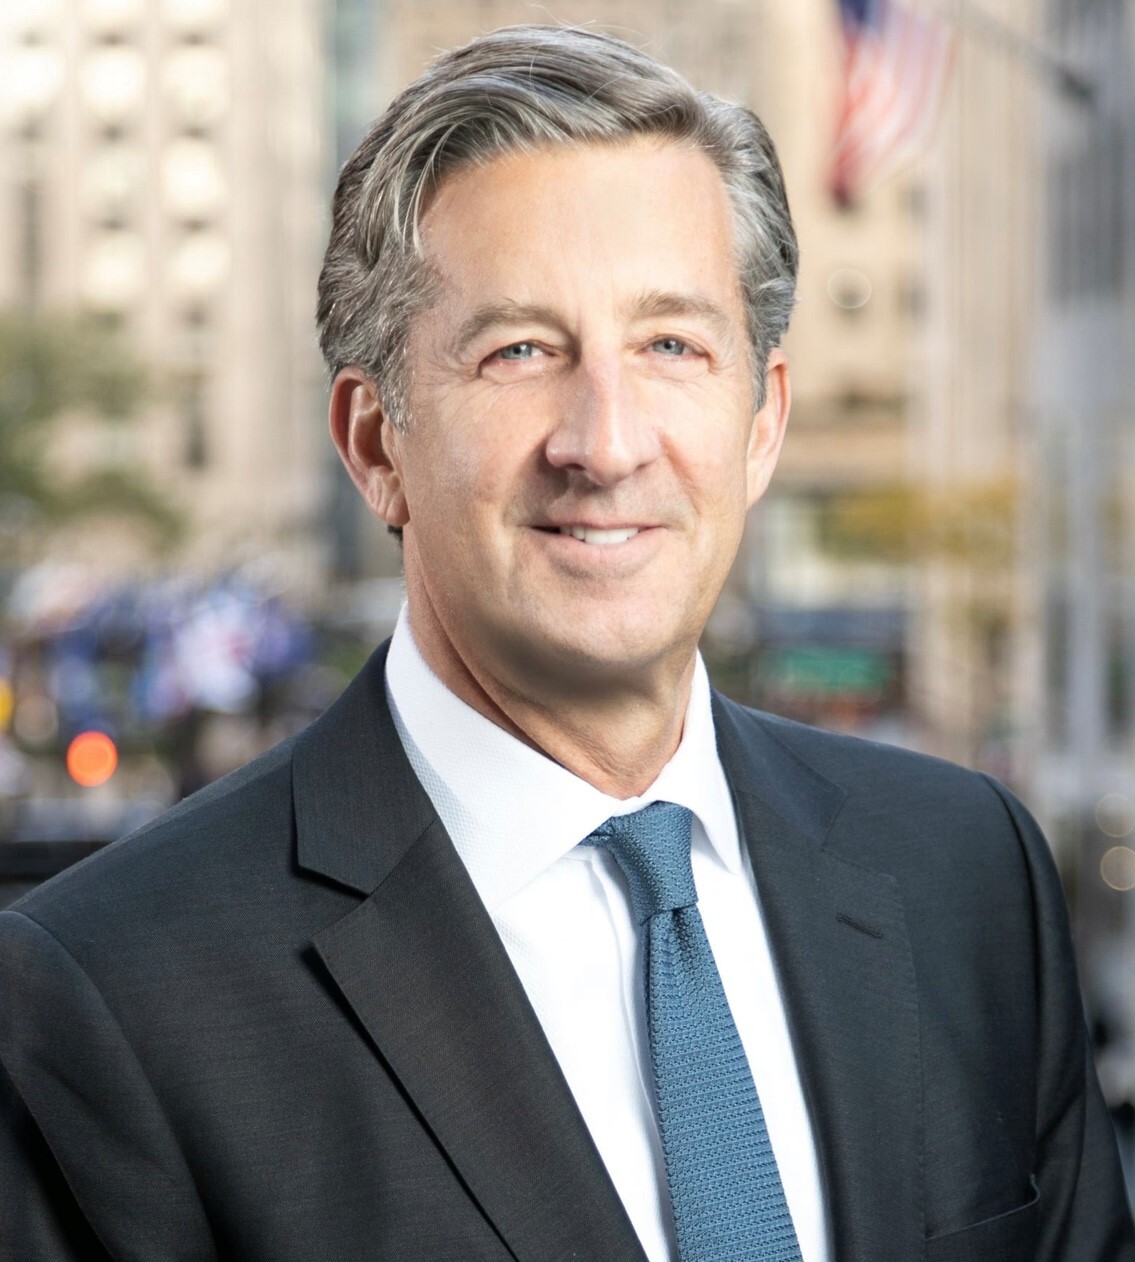 Peter J Ross - Financial Advisor in New York, NY 10019